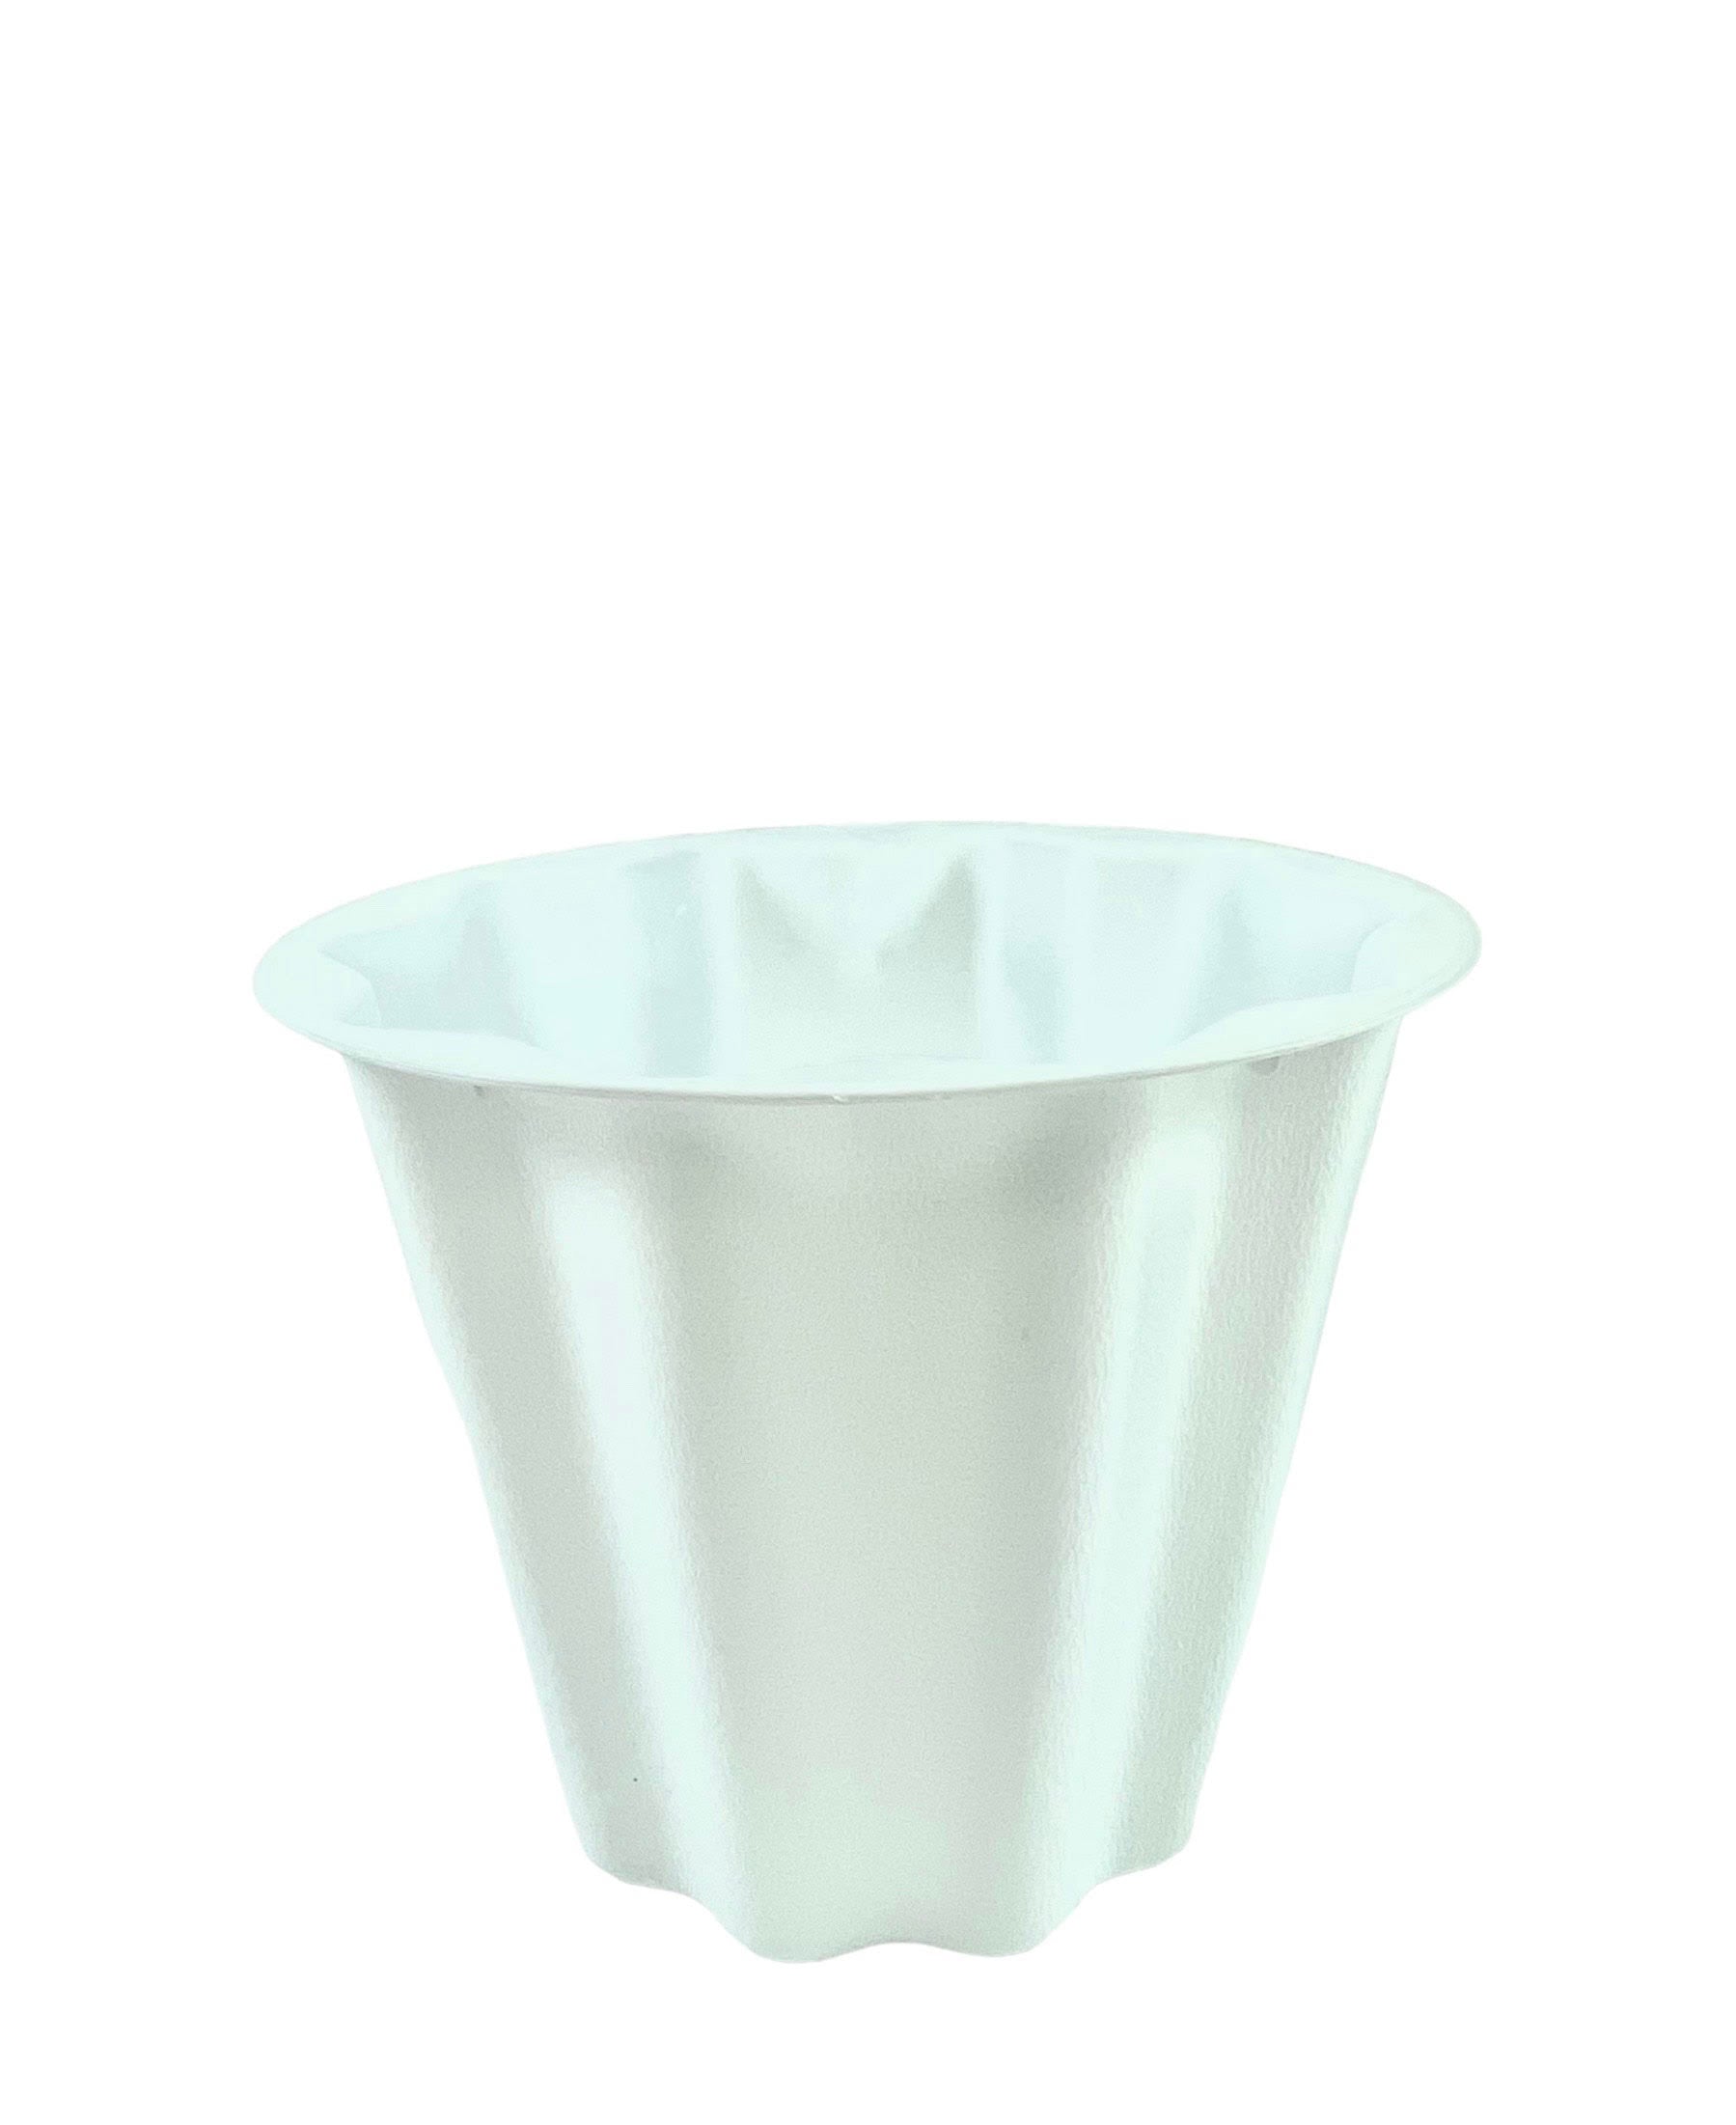 6J White Bucket Plastic Planter 9W x 7.5H -- 96 Per Case